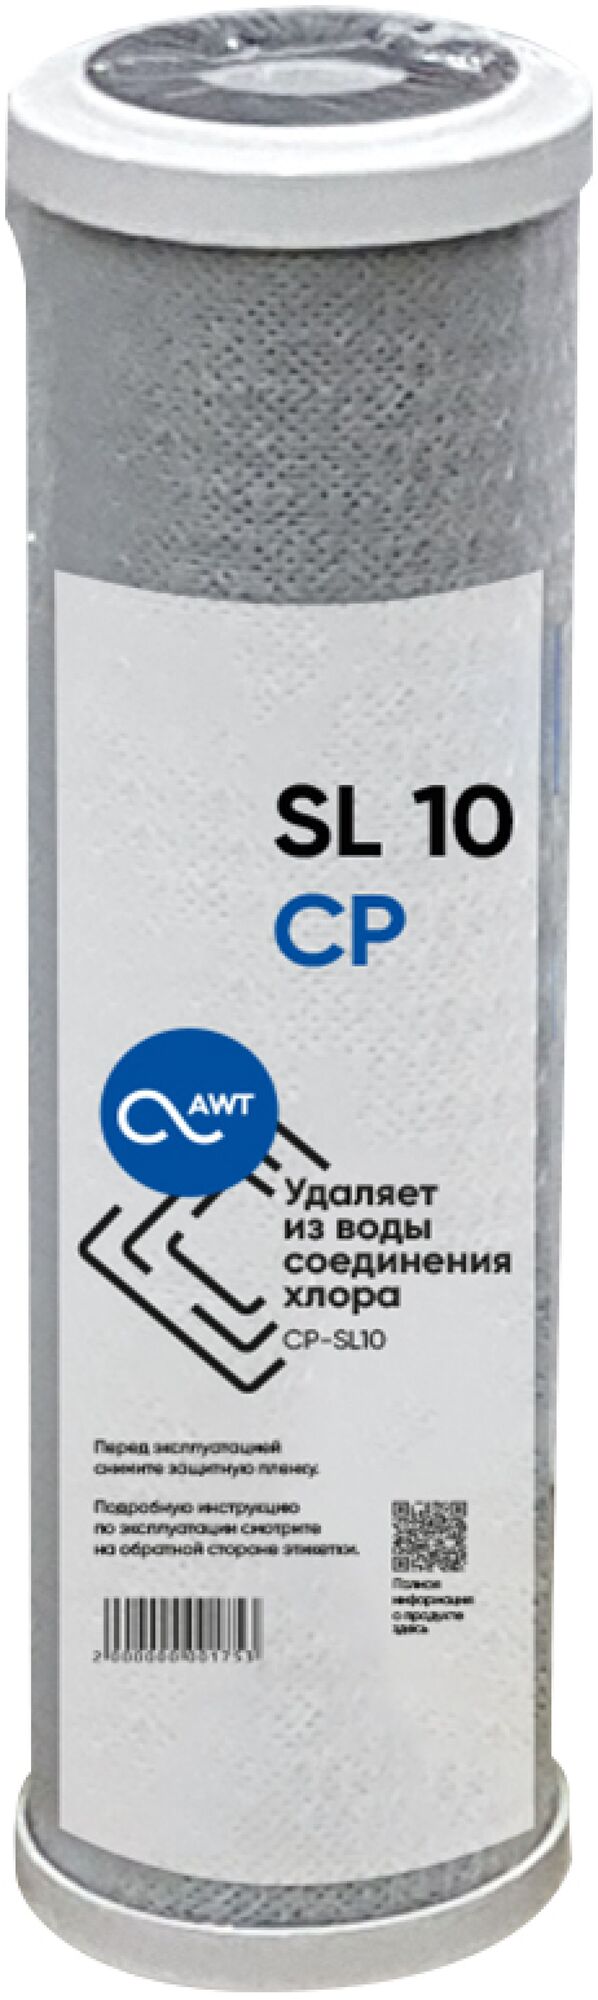 Картридж угольный (прессованный) AWT CP-SL10" (63/250 мм)